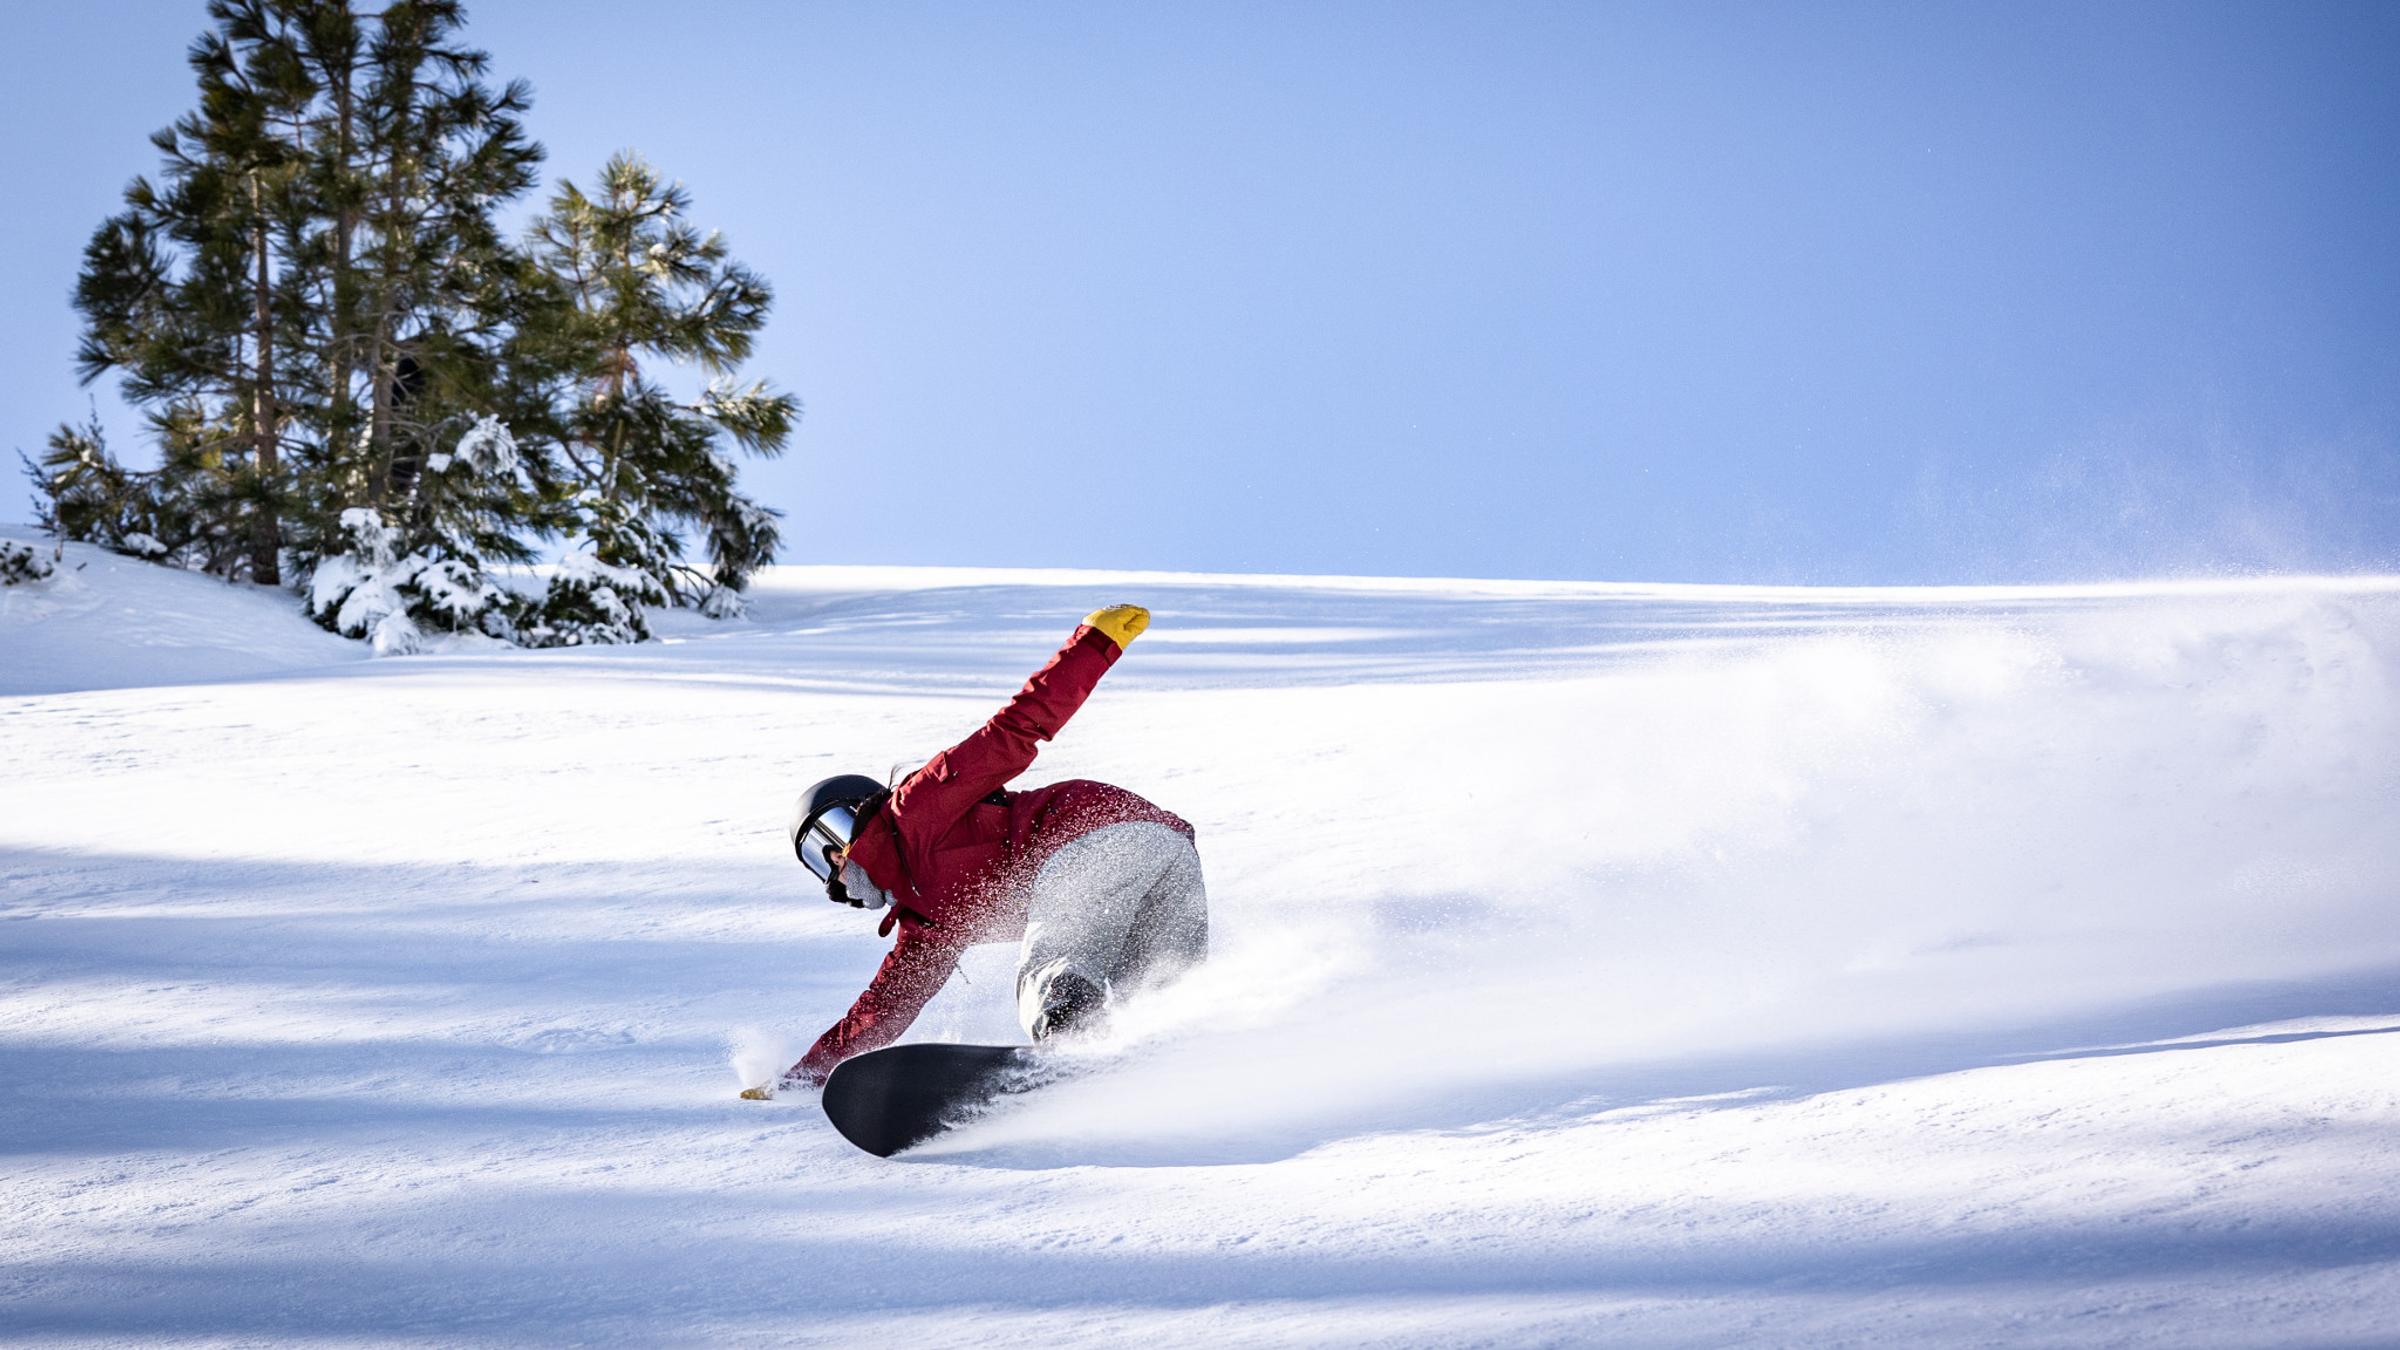 Snowboarder shredding in fresh powder